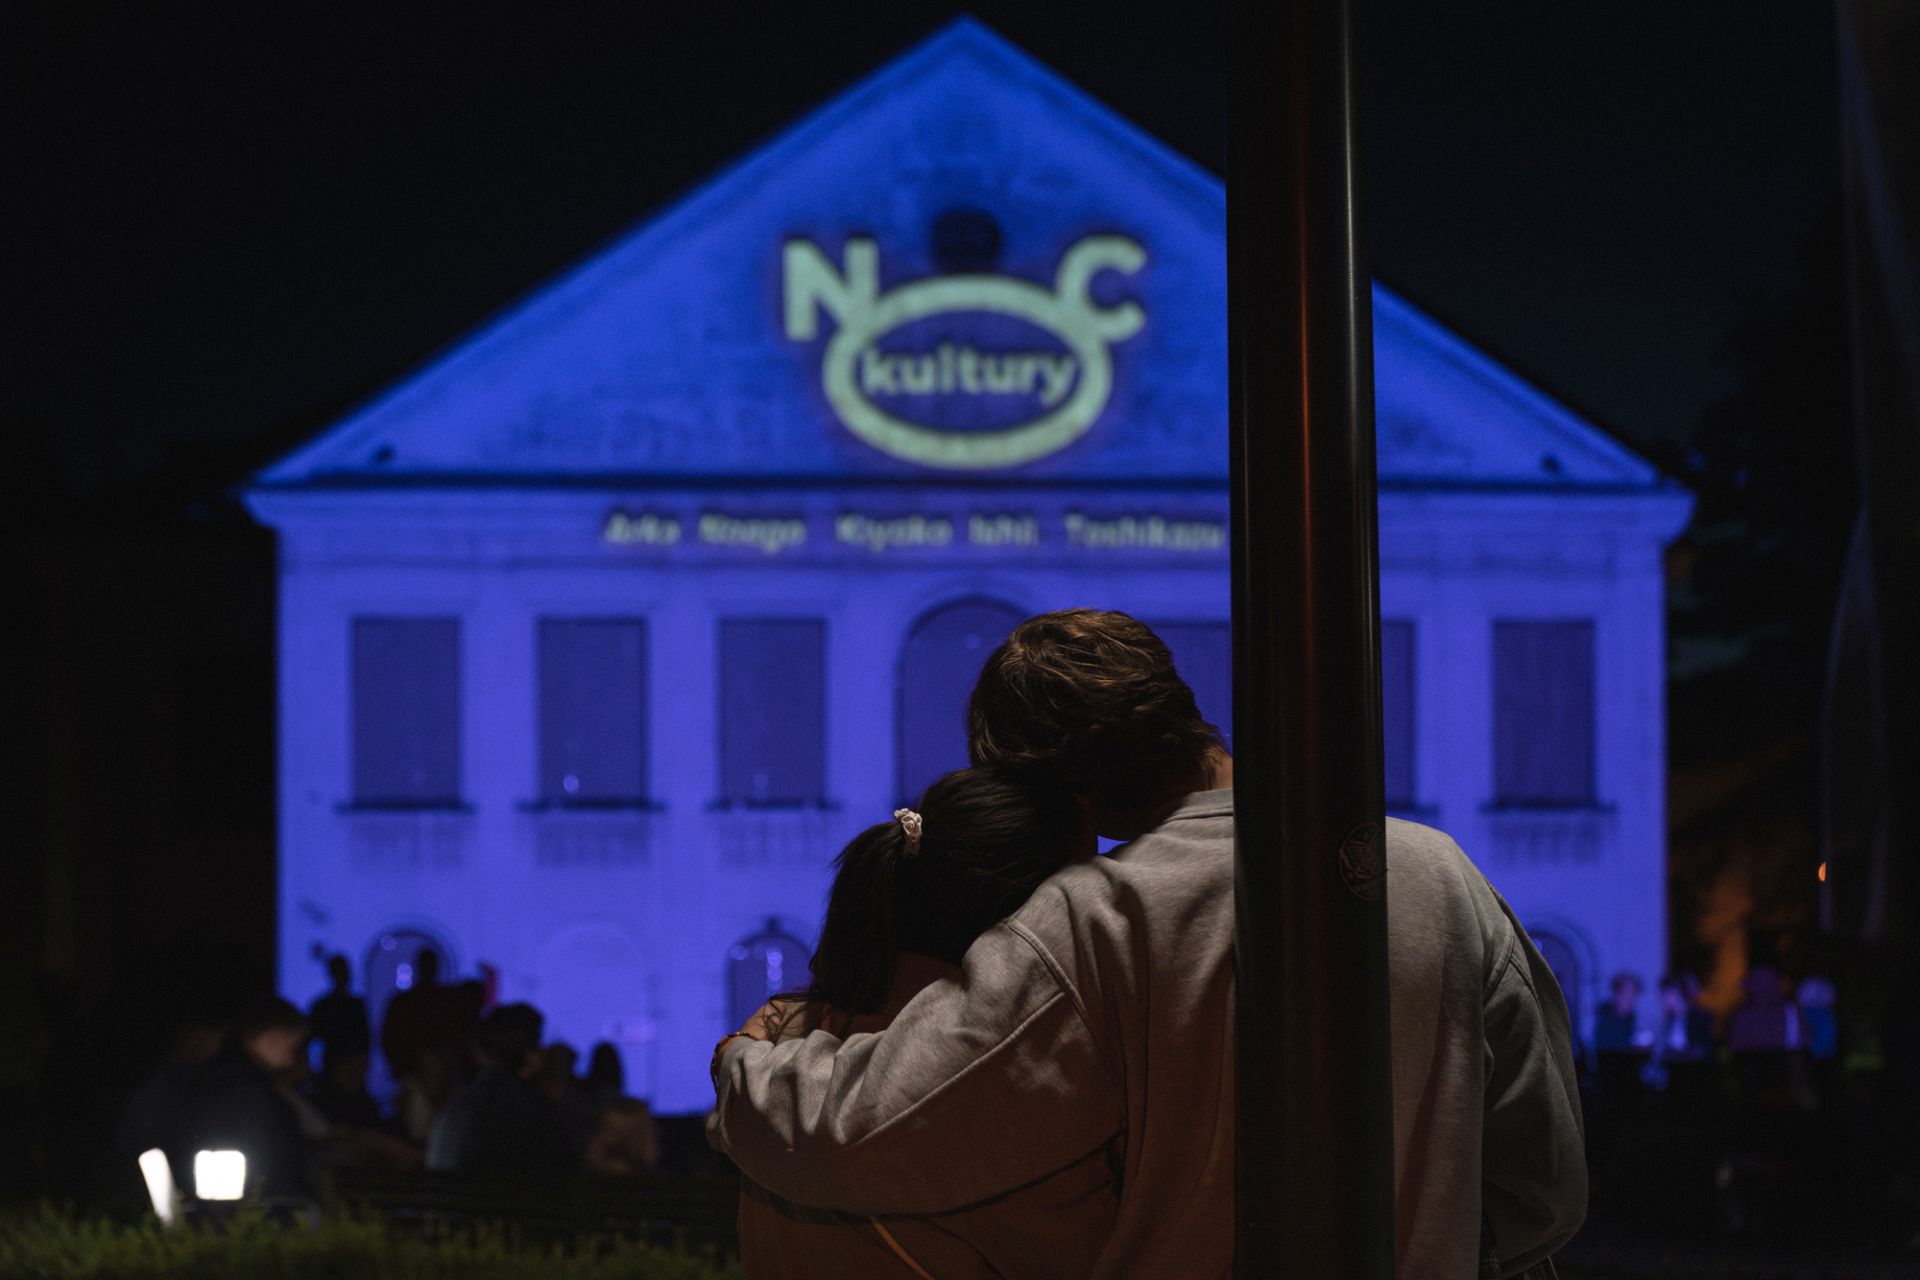 Kobieta i mężczyzna stoją przytuleni i oglądają mapping podczas Nocy Kultury.